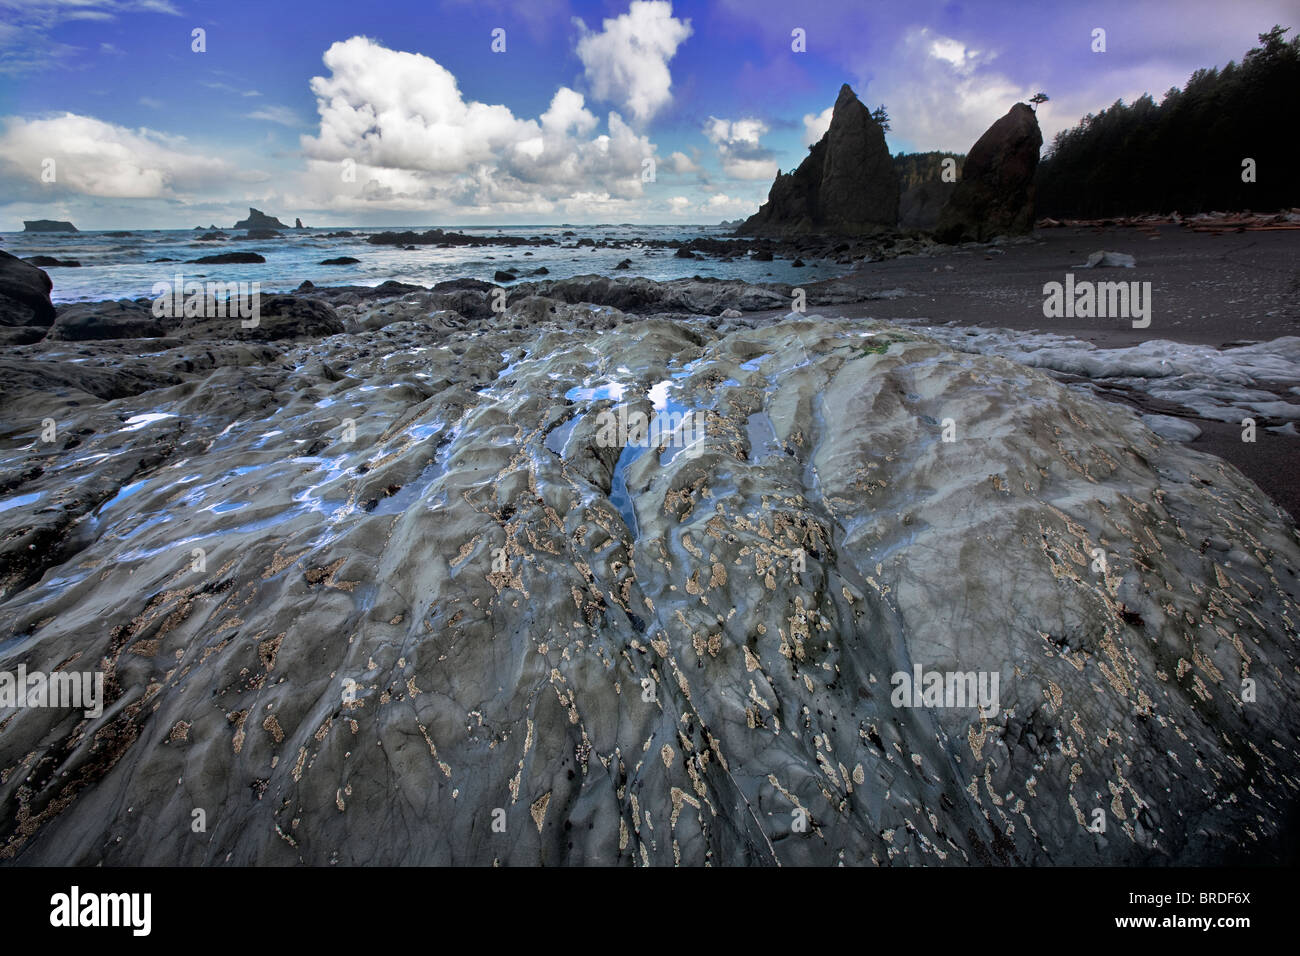 Cirripedi sulla roccia a Rialto Beach. Il Parco nazionale di Olympic, Washington Foto Stock